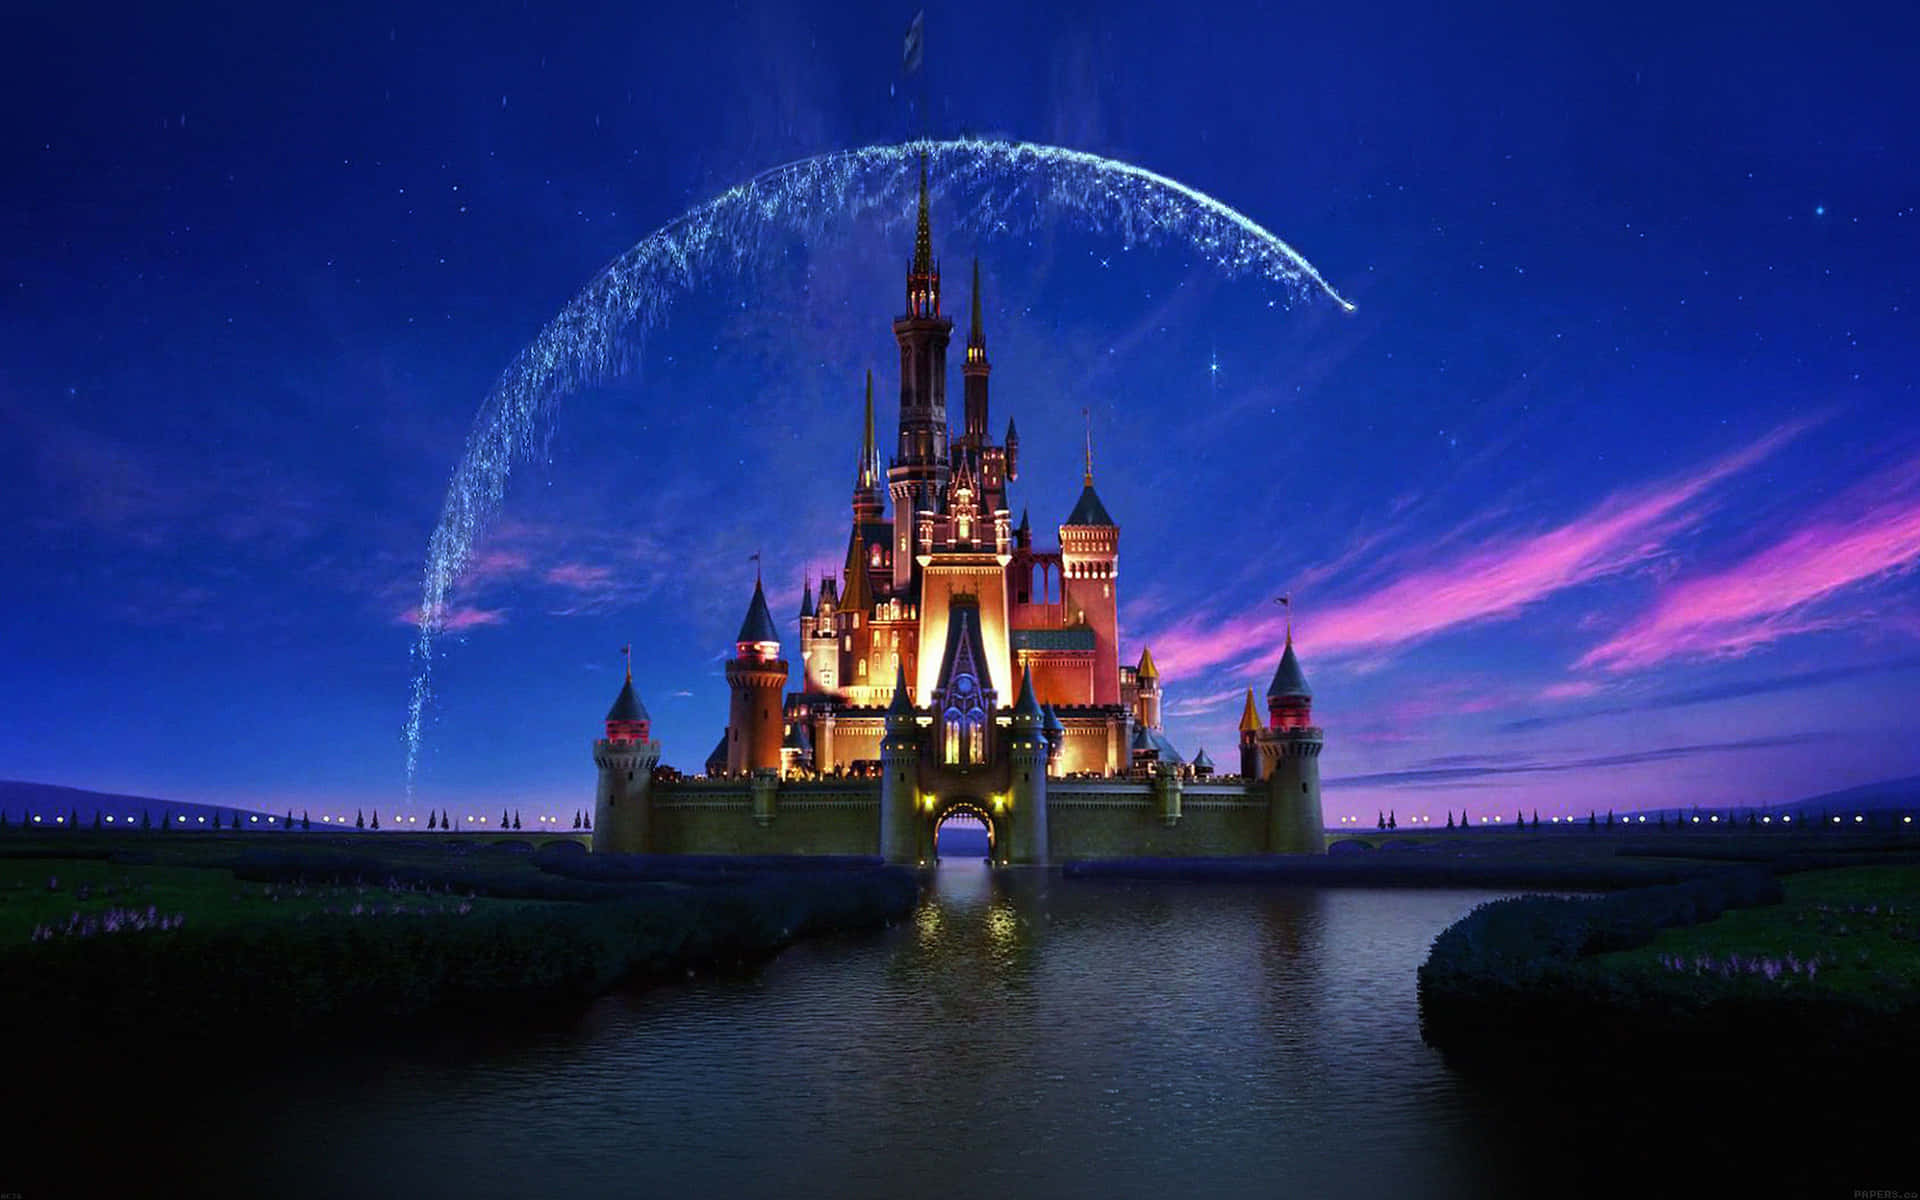 Macheerinnerungen In Der Zauberhaften Welt Von Disney!